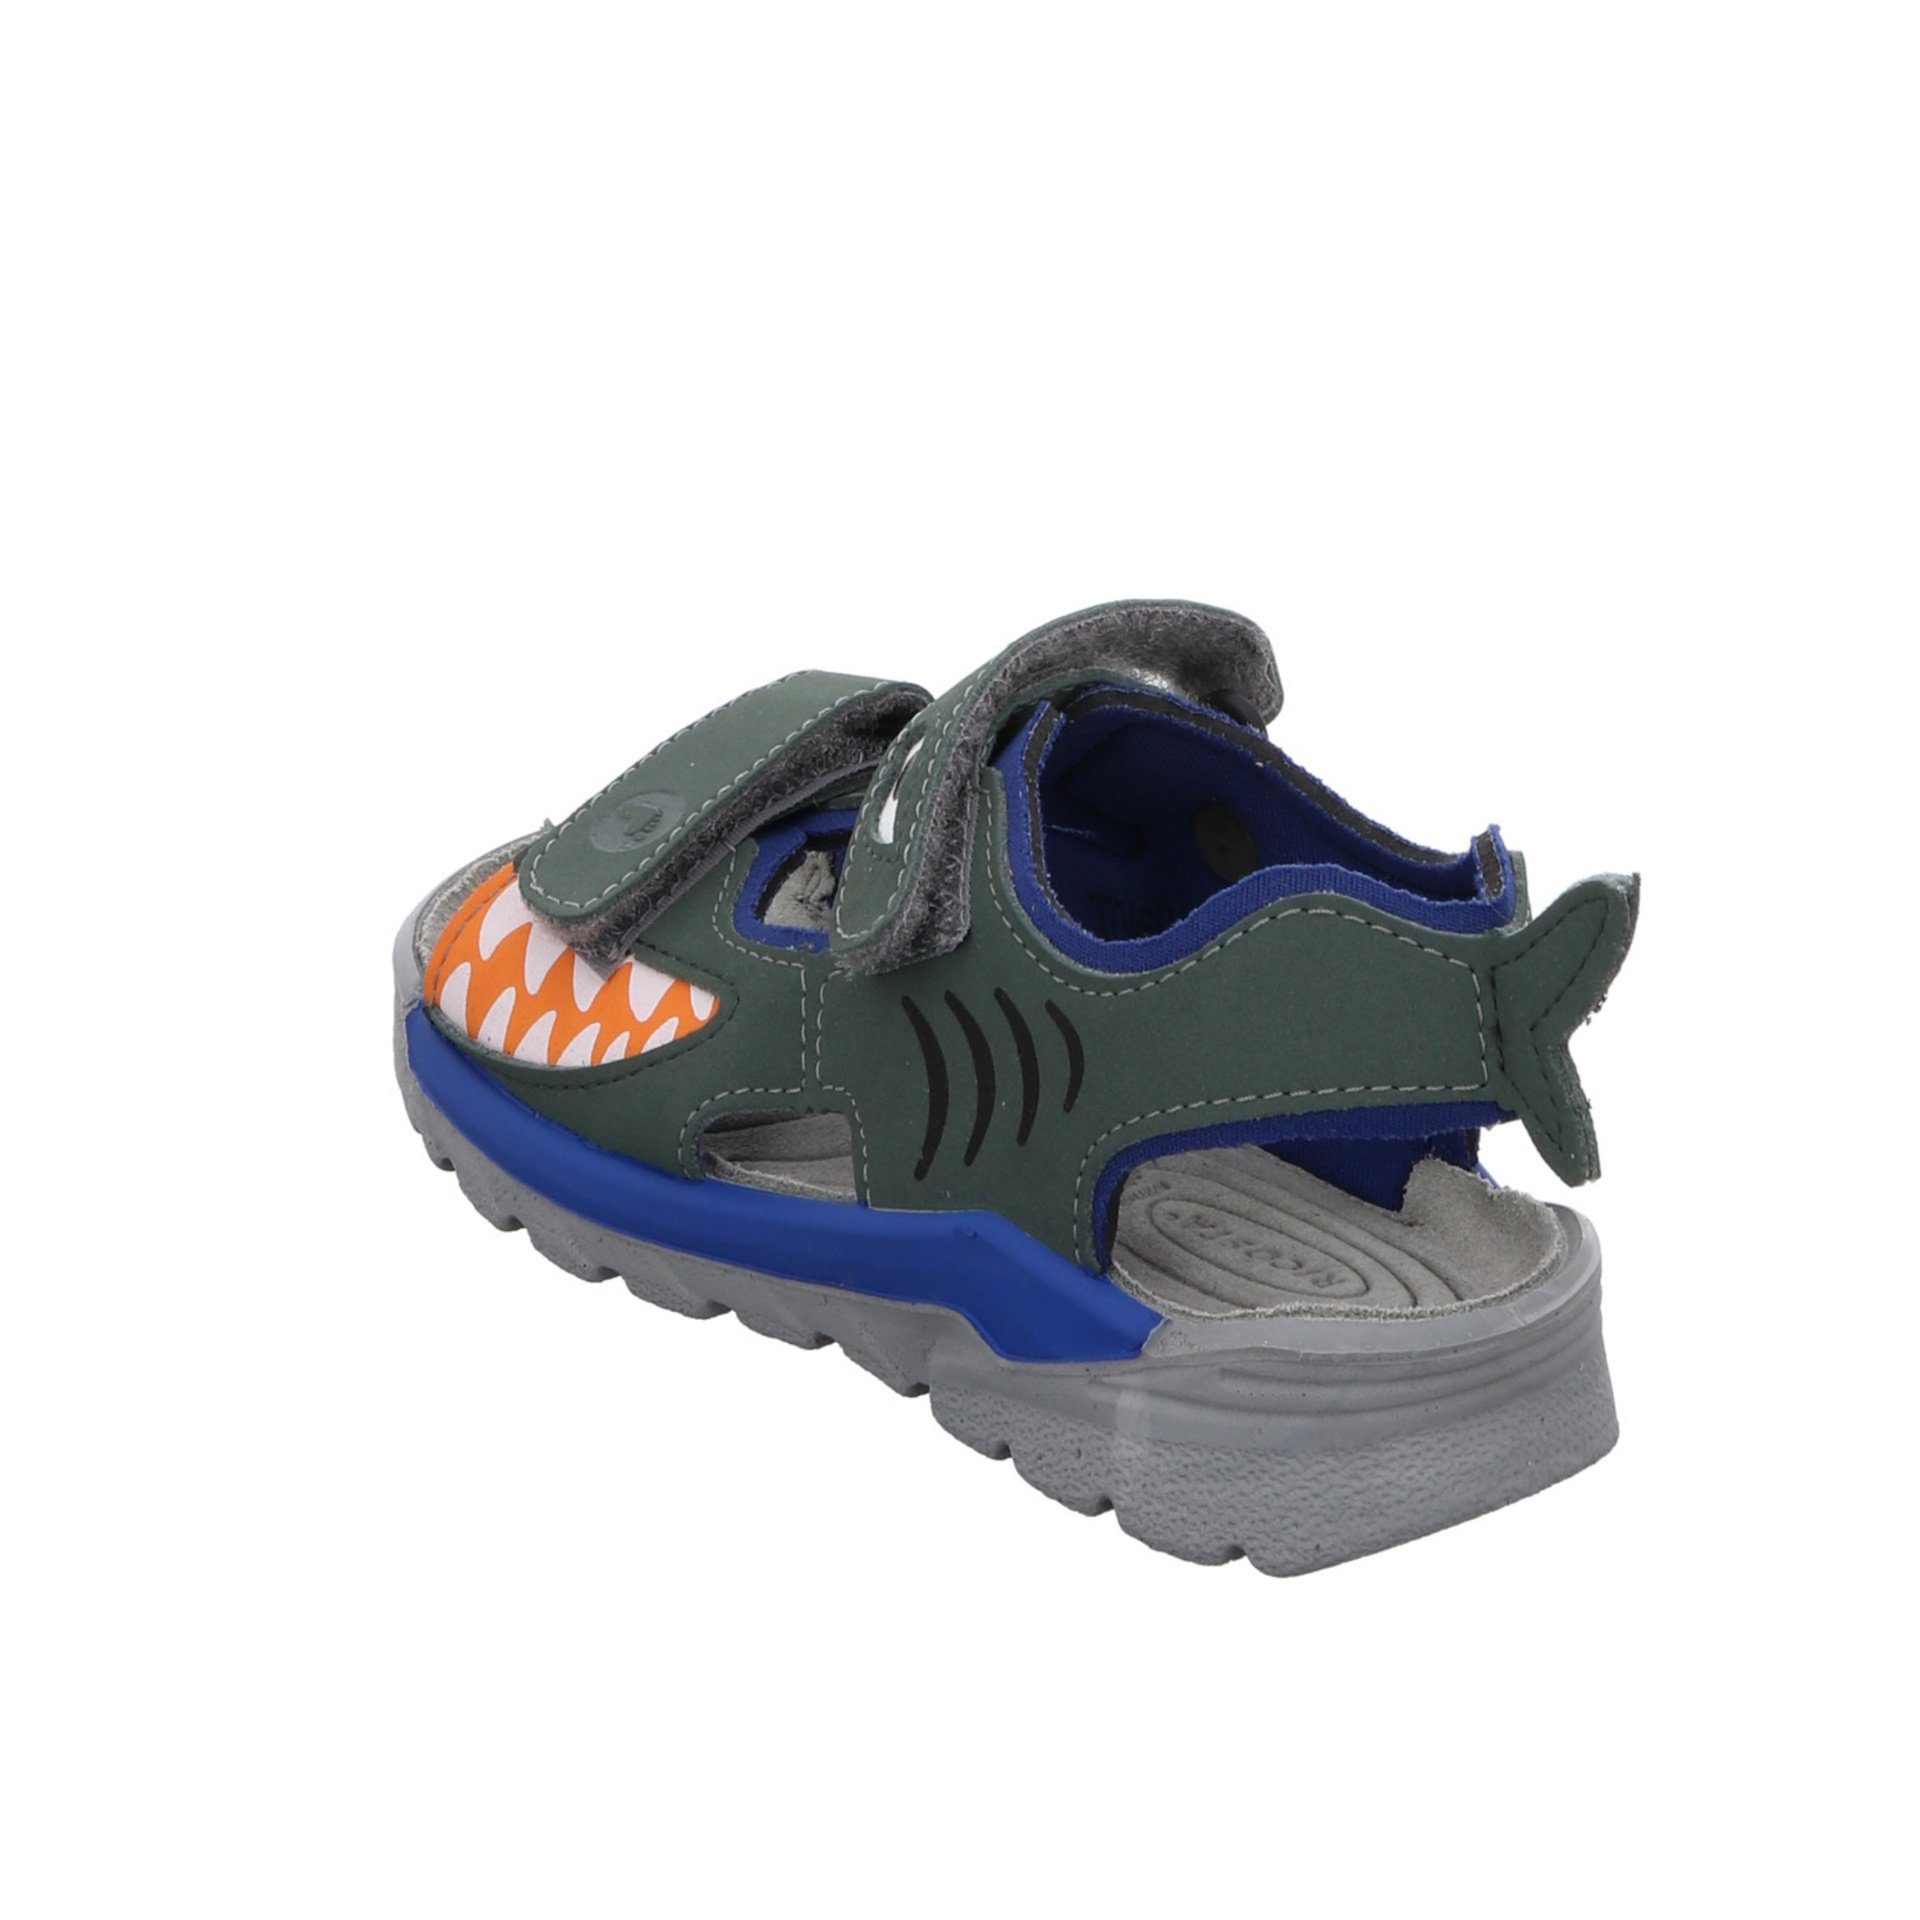 Ricosta Jungen Sandalen Schuhe Shark grün Sandale Textil Kinderschuhe Sandale